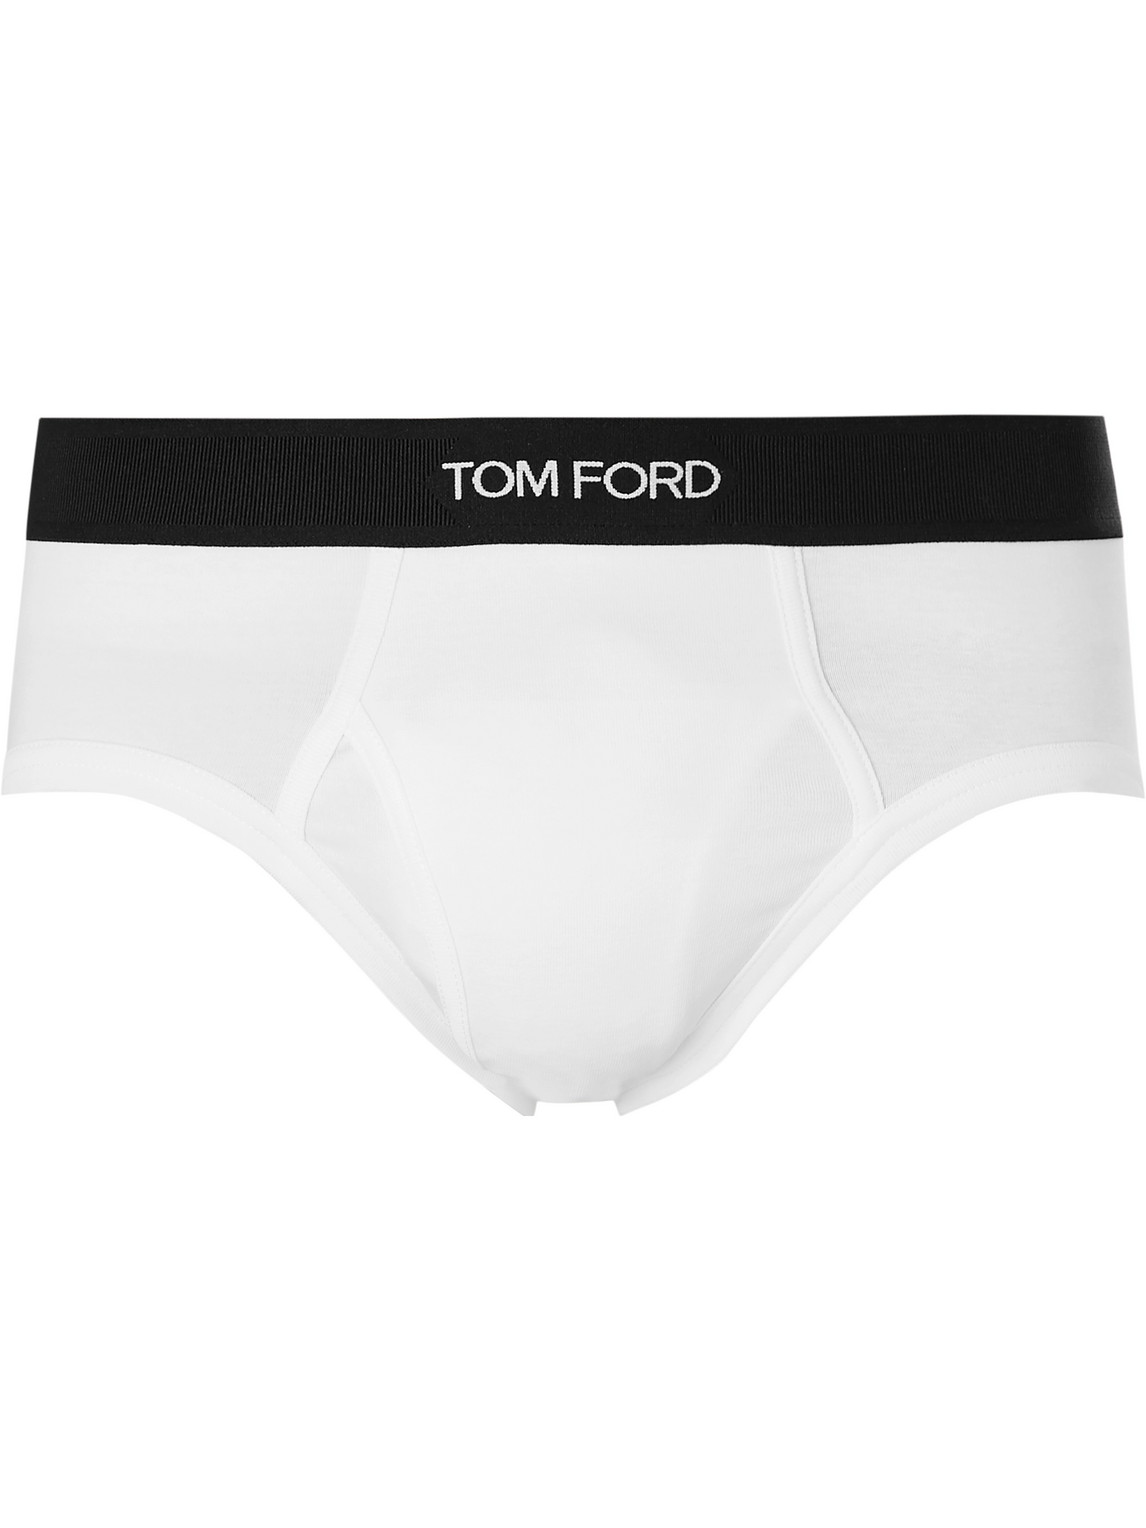 TOM FORD - Stretch-Cotton Briefs - Men - White - S von TOM FORD